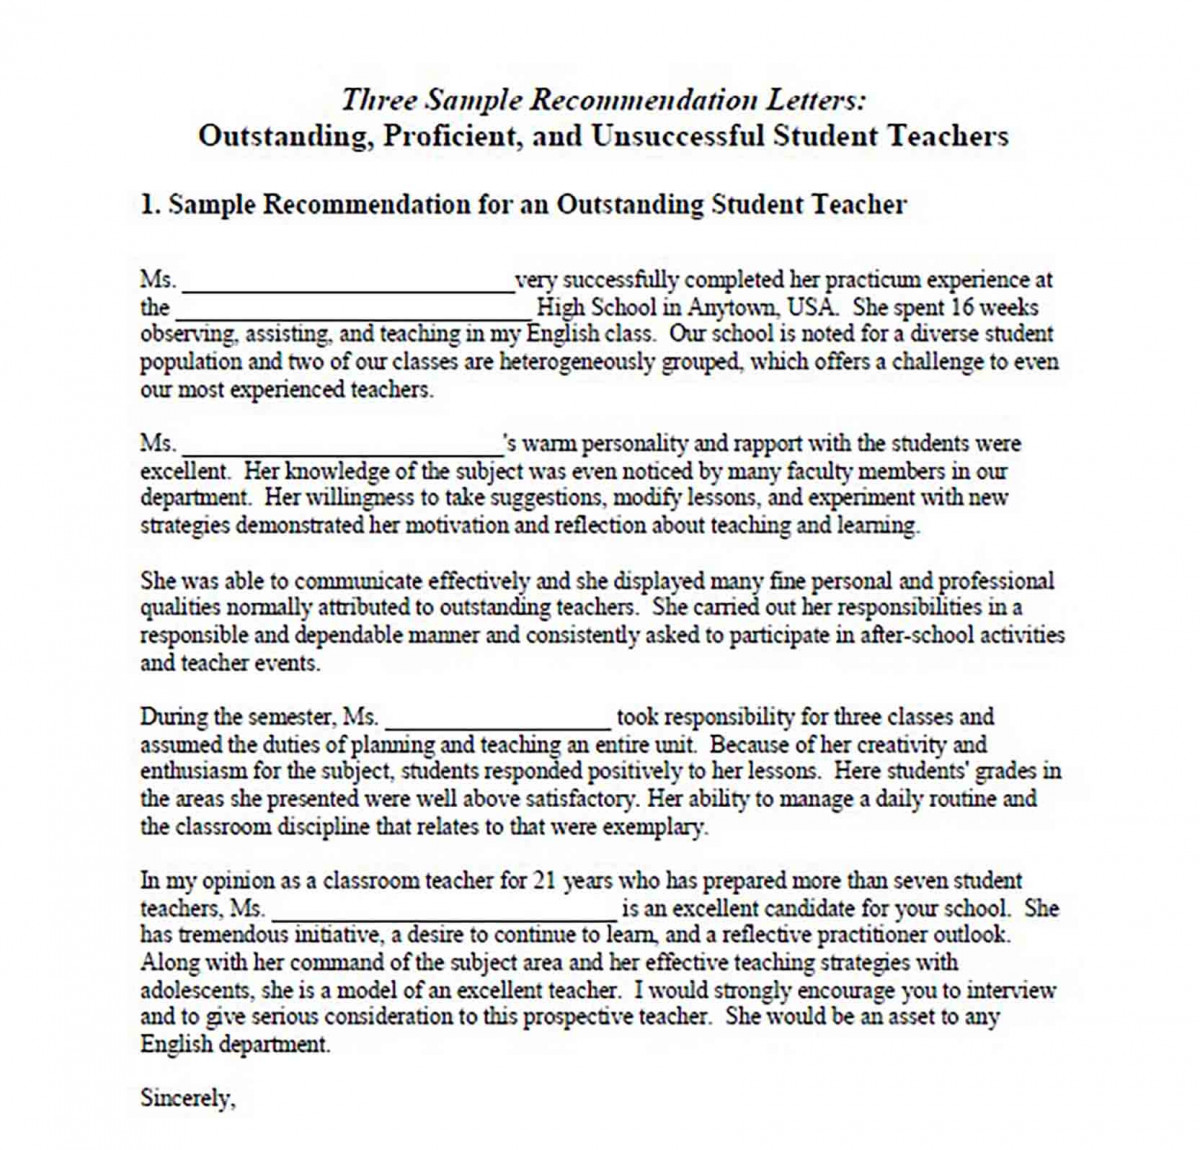 Sample Recommendation Letter for Outstanding Student Teacher